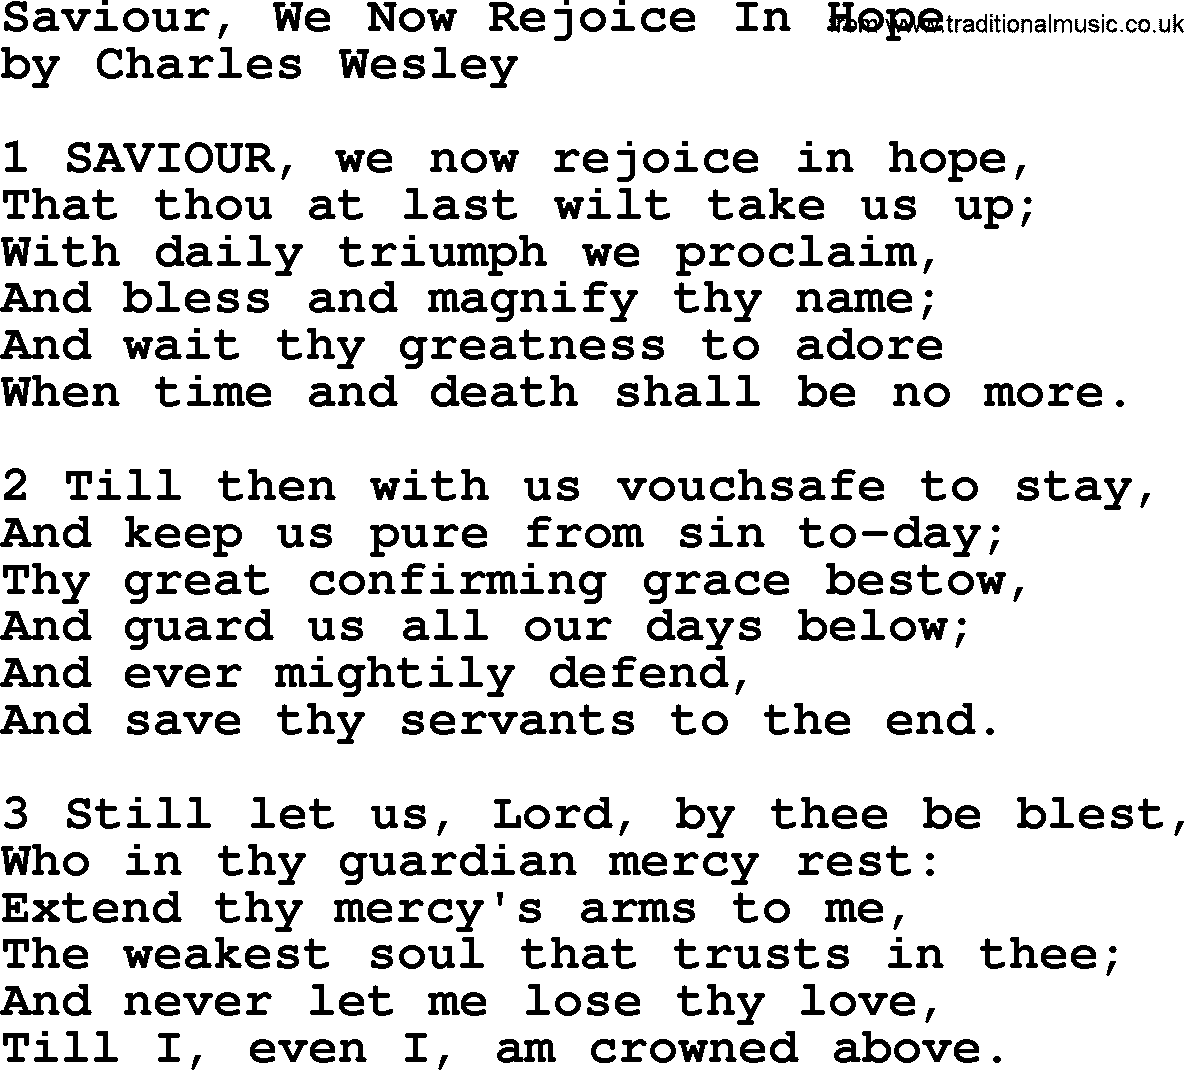 Charles Wesley hymn: Saviour, We Now Rejoice In Hope, lyrics